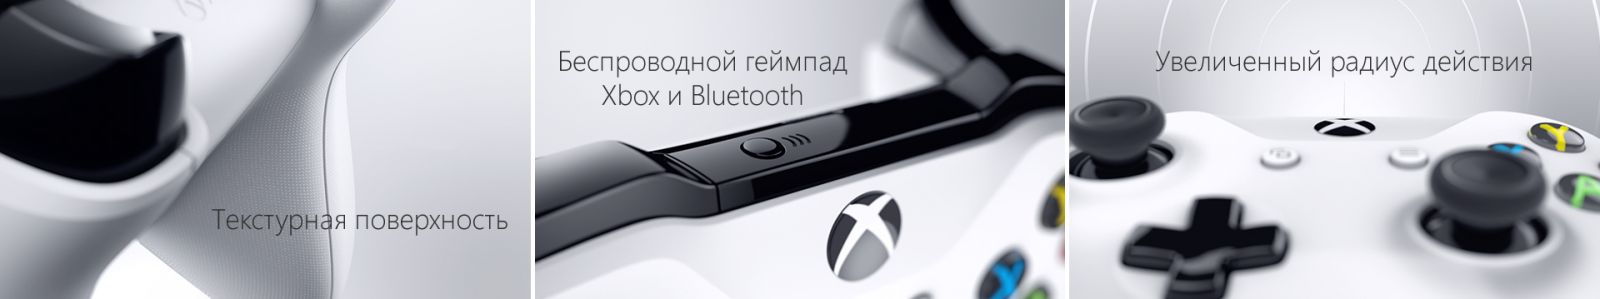 Xbox One S 2TB с двумя джойстиками image7